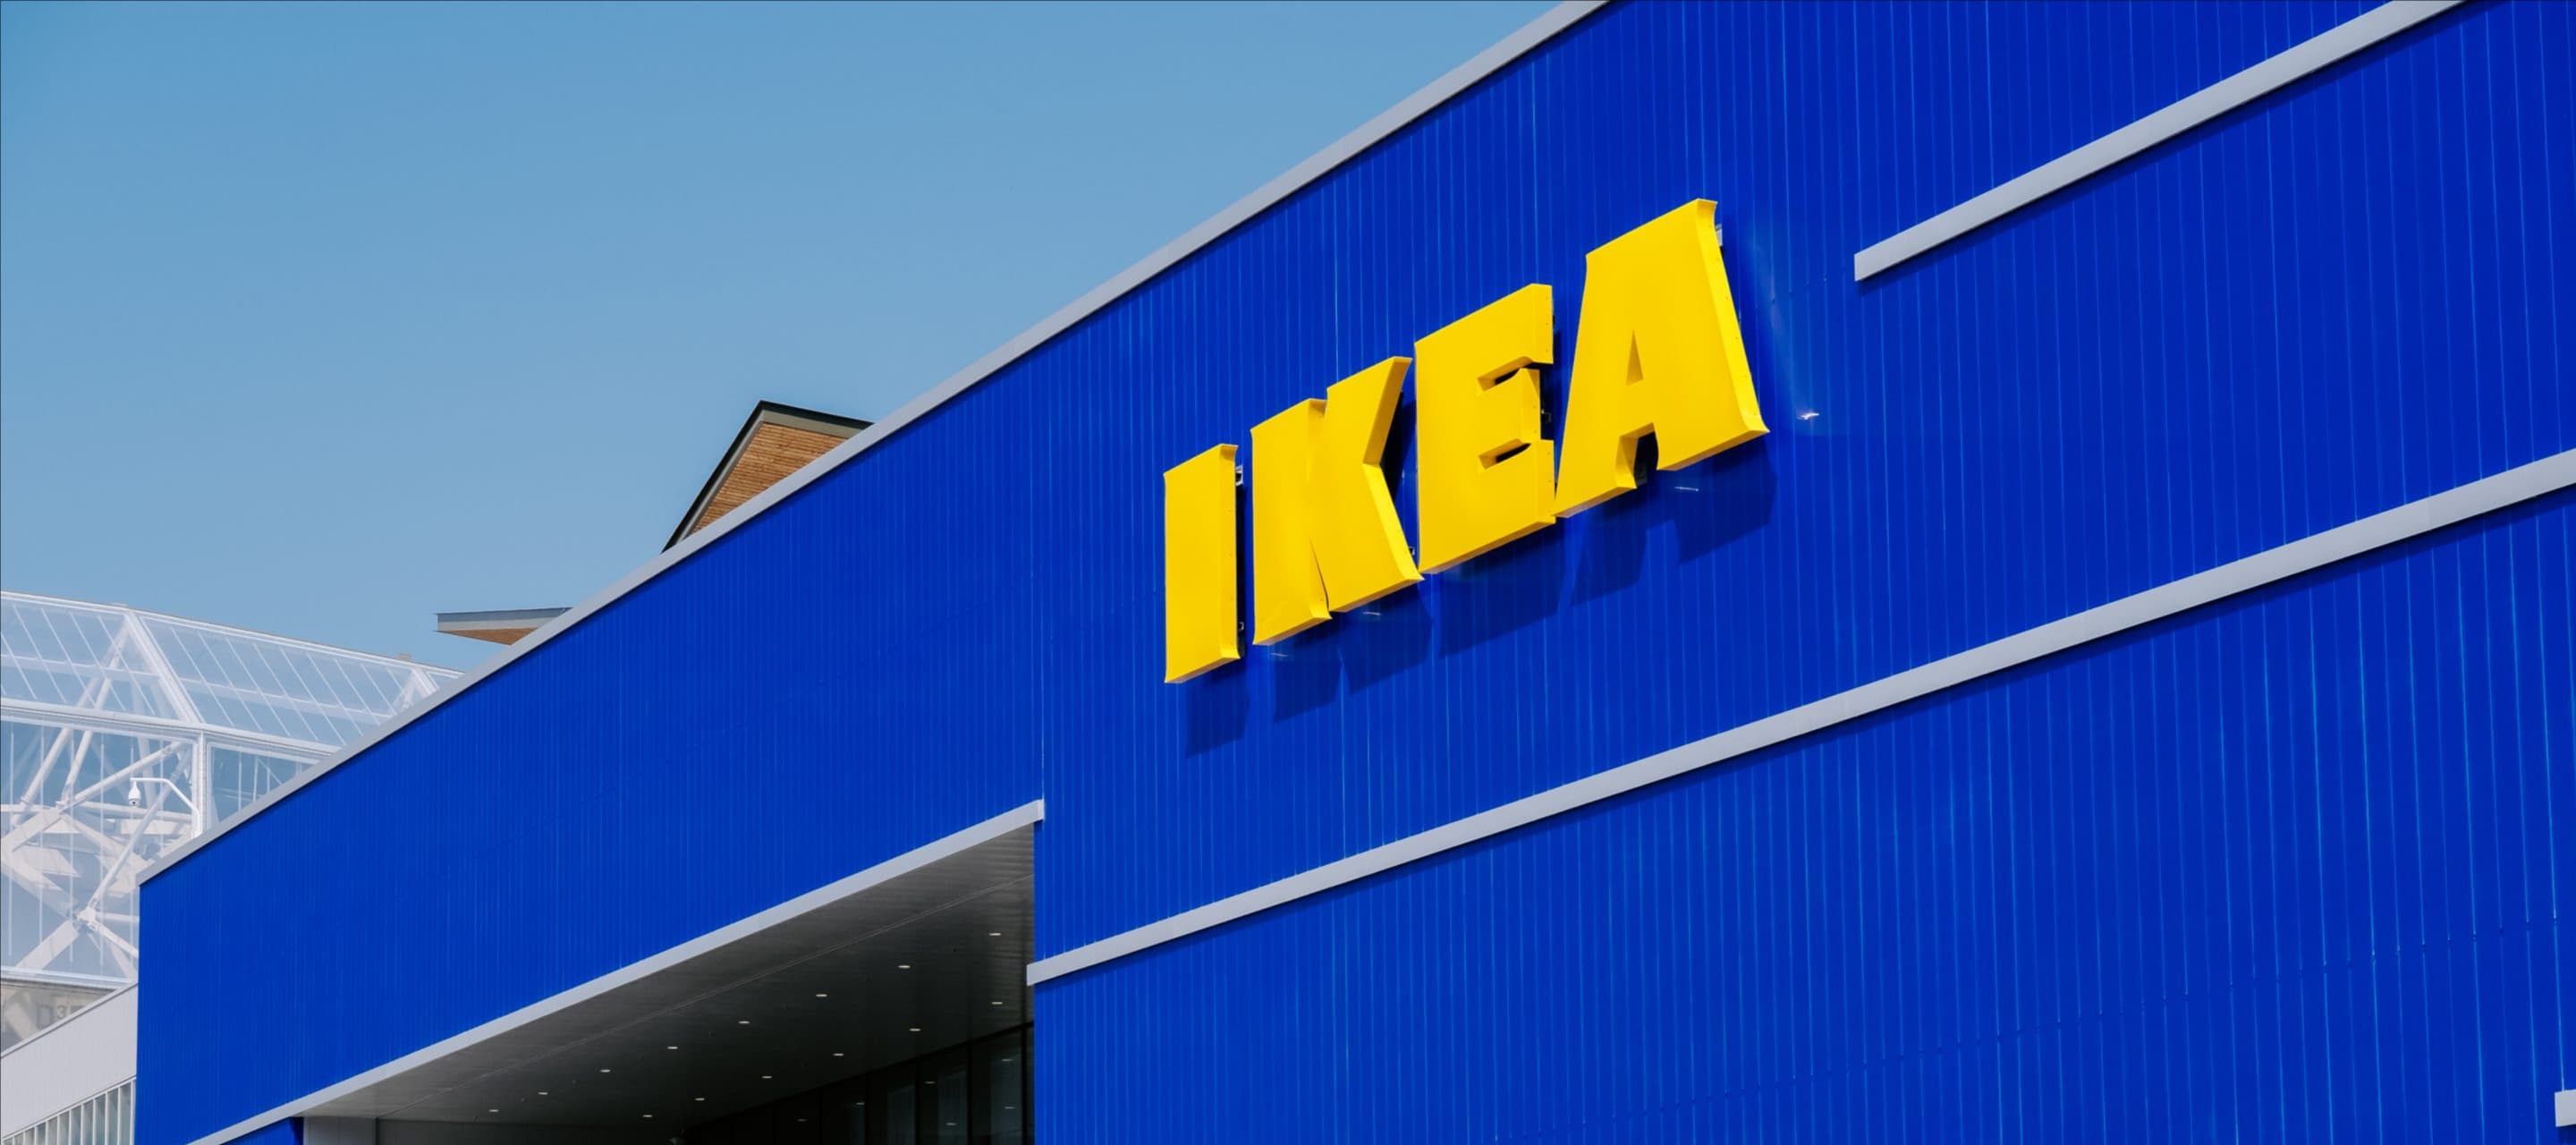 Фото новости: "Ikea меняет планировку в магазинах городского формата"